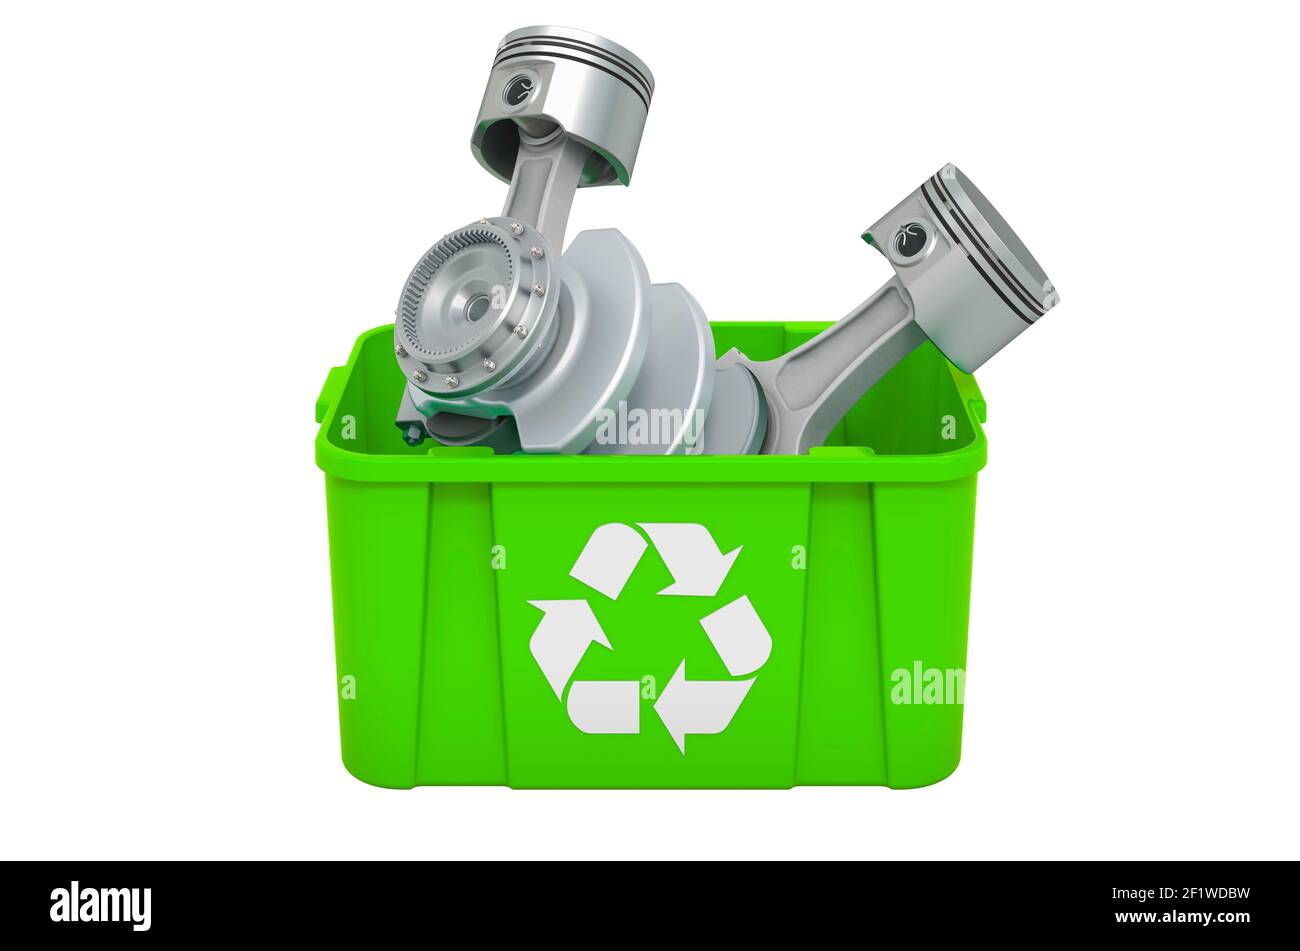 Poubelle de recyclage avec pistons de moteur, rendu 3D isolé sur fond blanc Banque D'Images